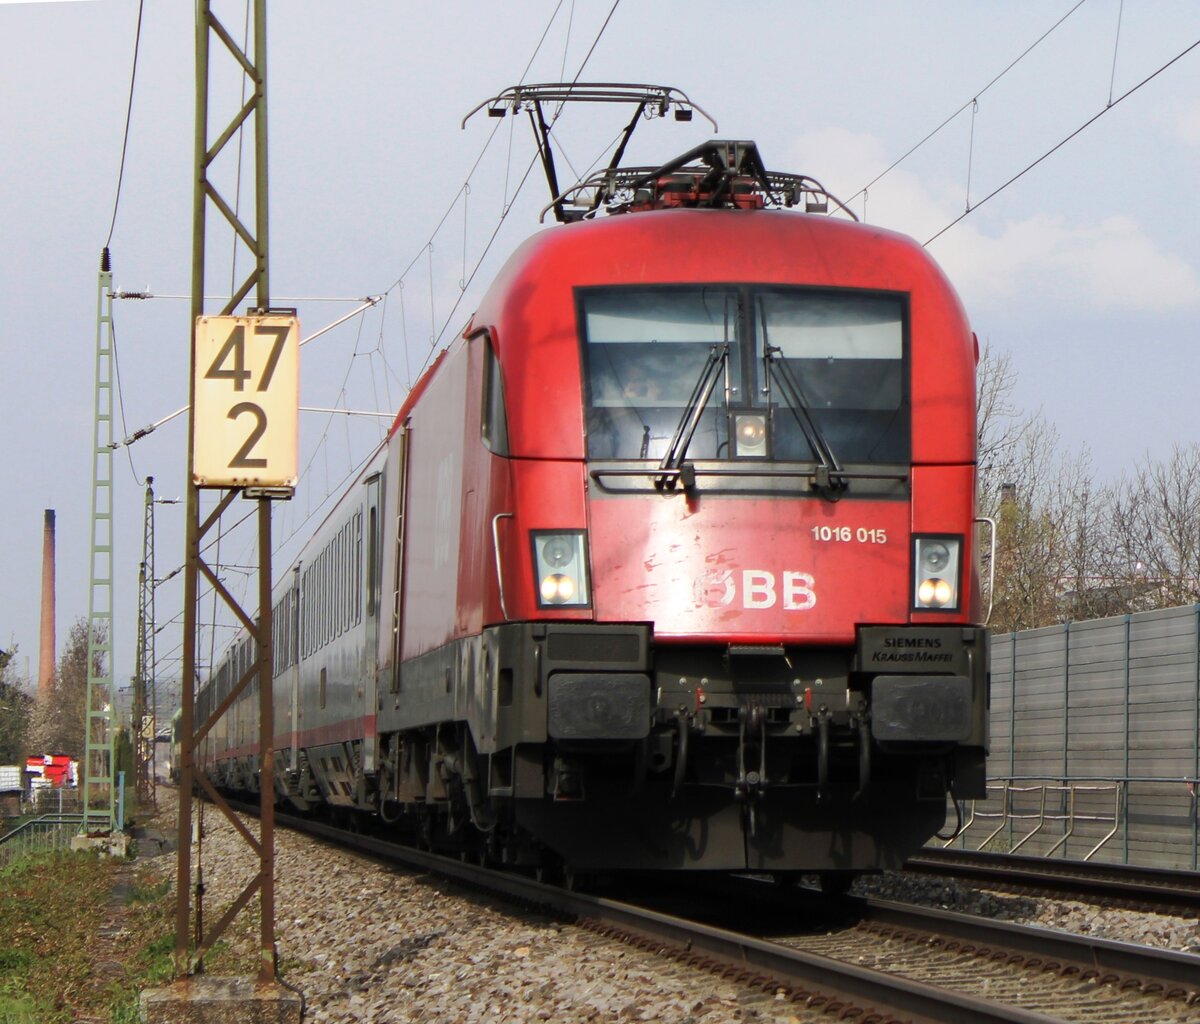 1016 015 Auf der Strecke zwischen Eislingen und Süssen 27.4.2021 